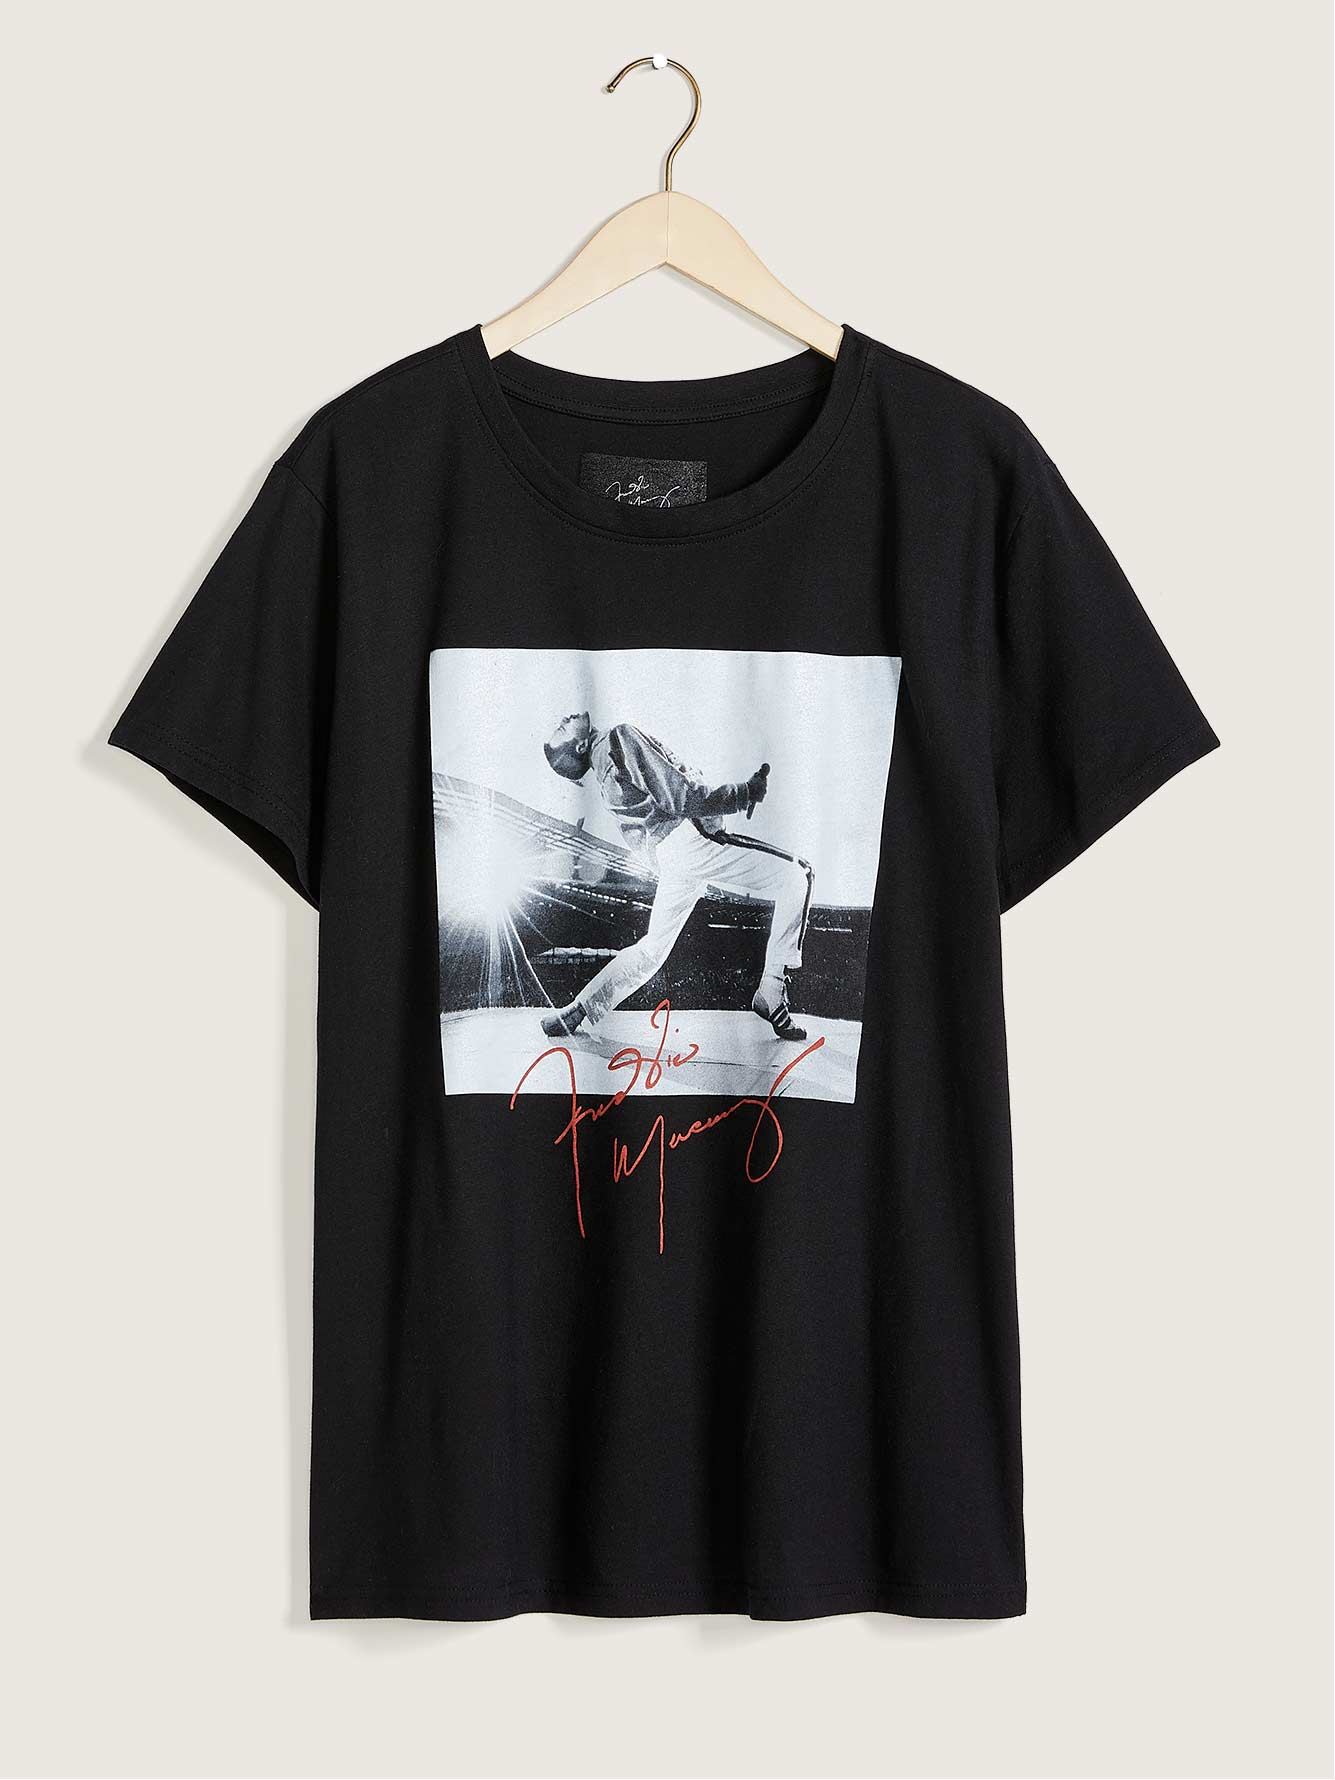 License T-Shirt - Addition Elle